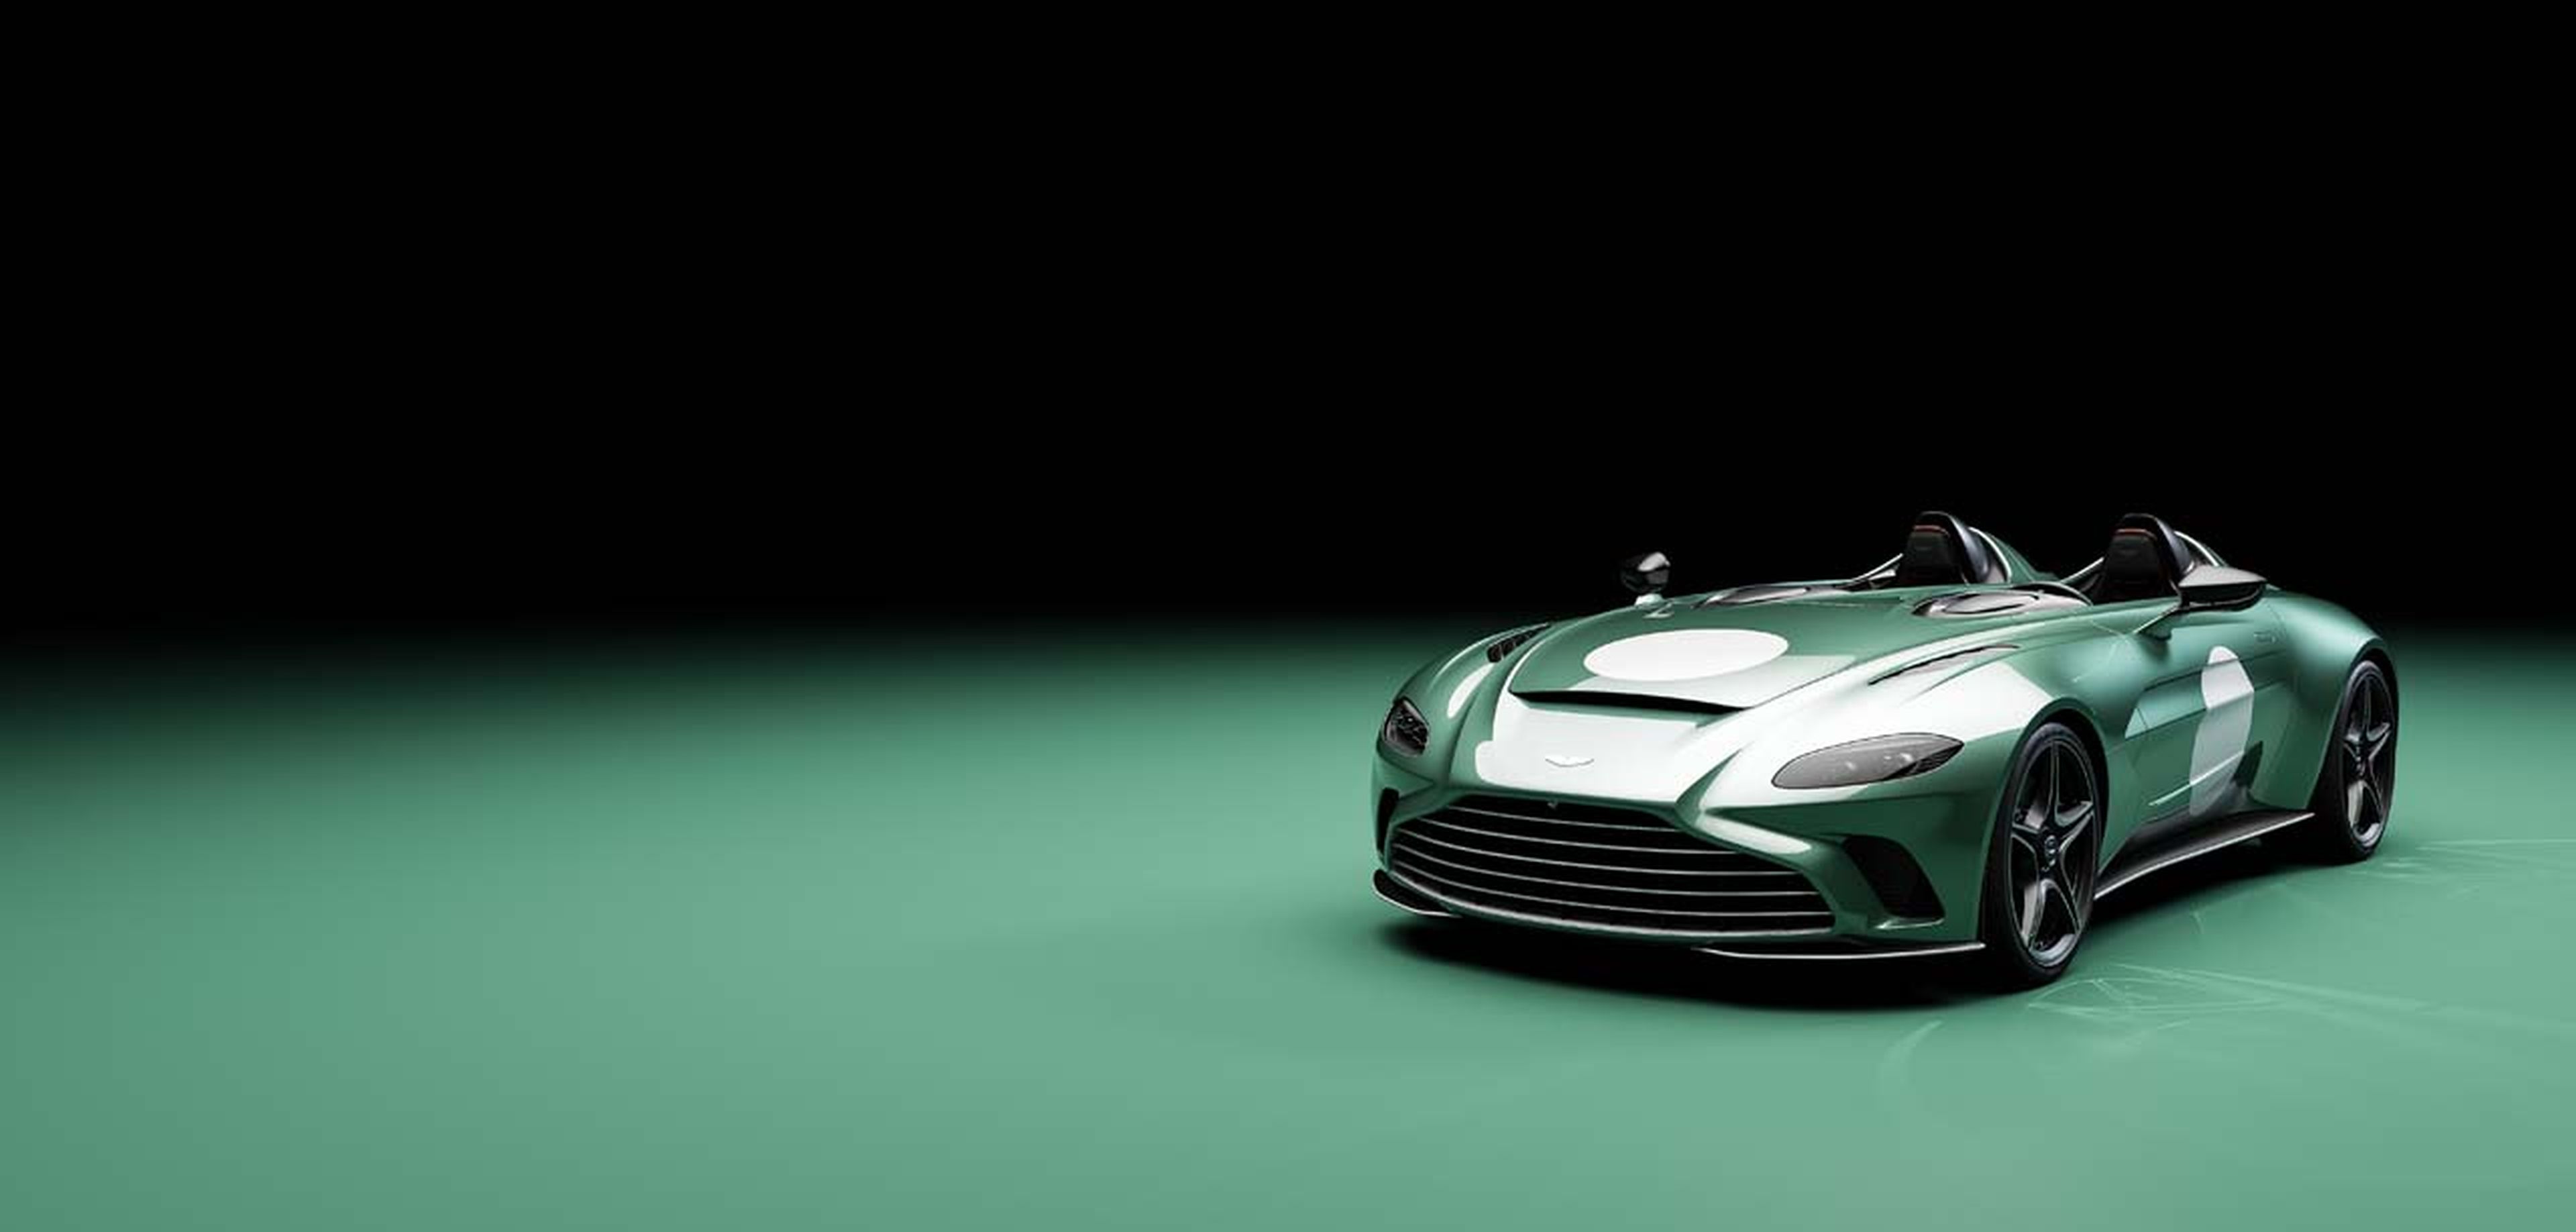 Aston Martin V12 Speedster DBR1